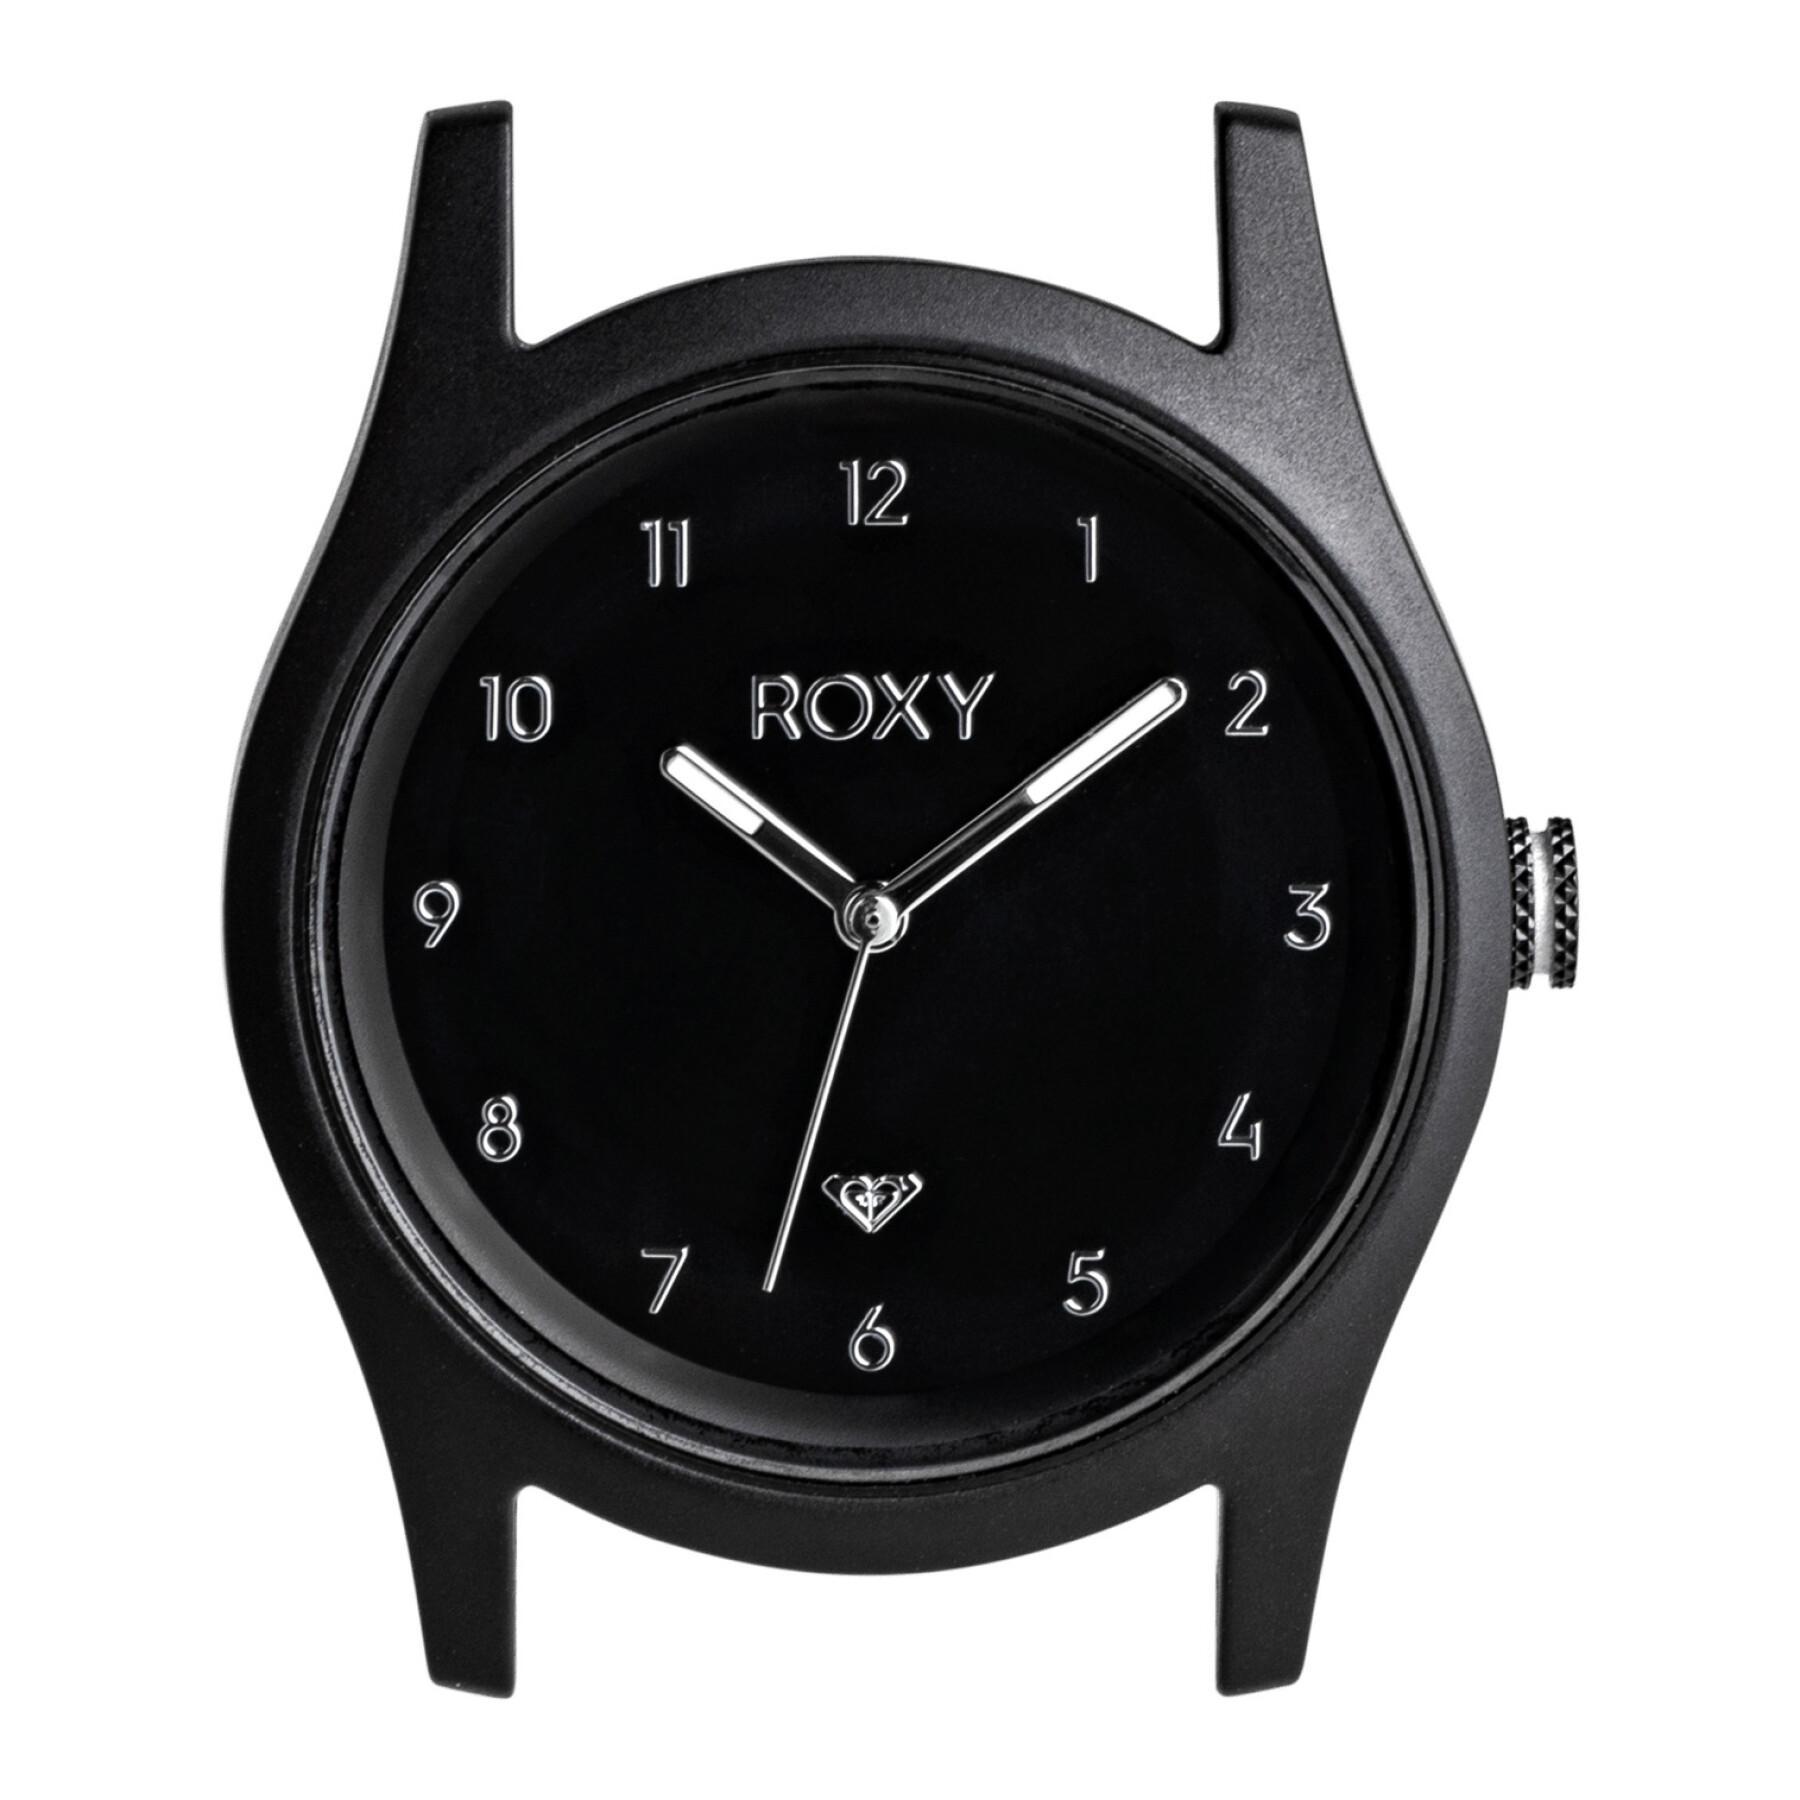 Women's analog watch case Roxy Ally Classic